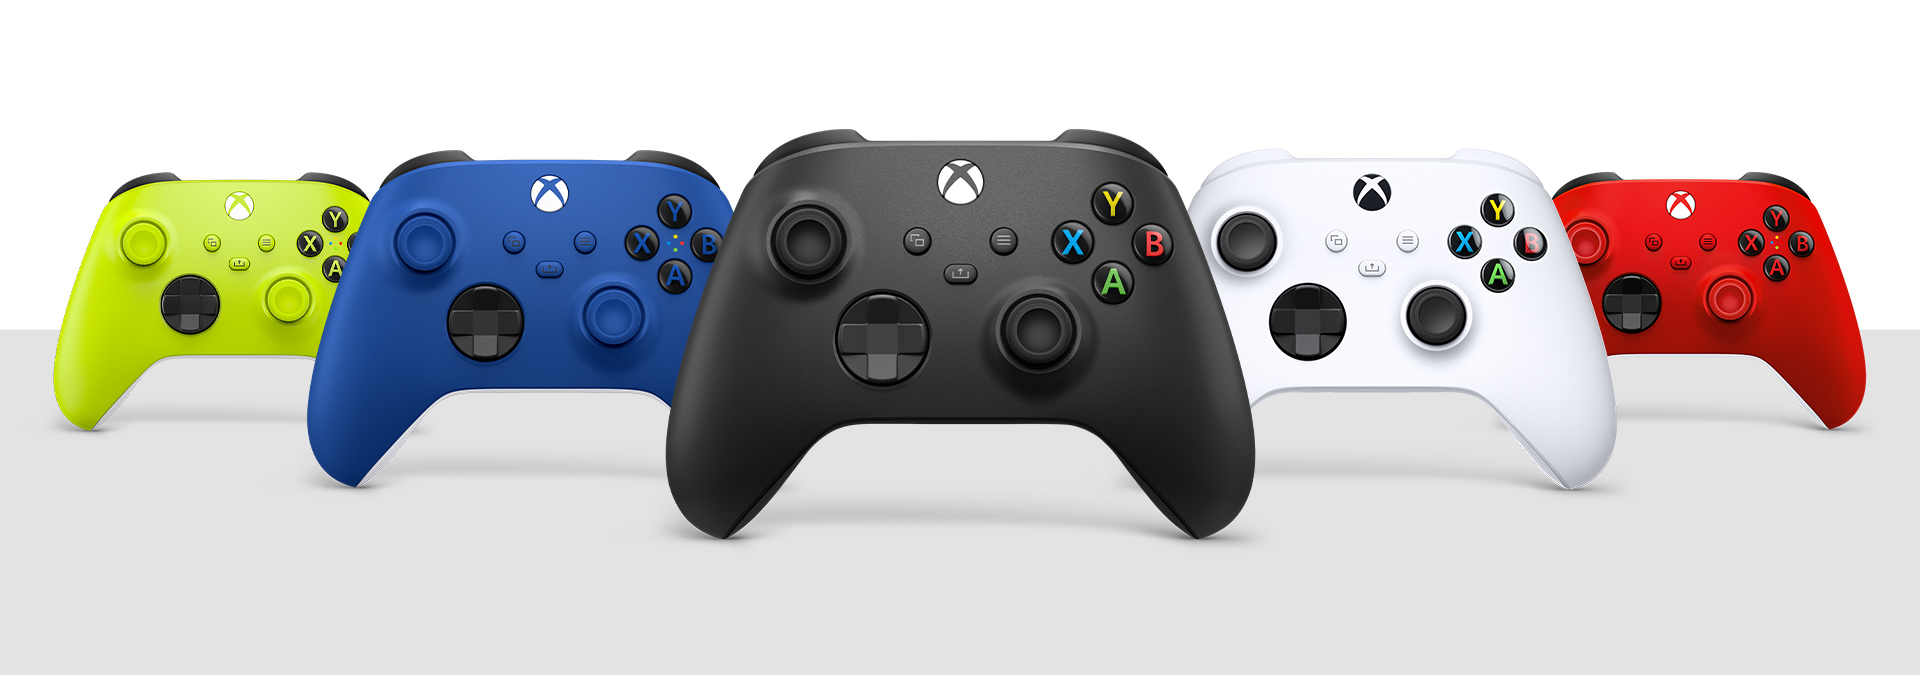 Mando inalámbrico Xbox en negro carbón, blanco robot, azul eléctrico, rojo latido y alto voltaje